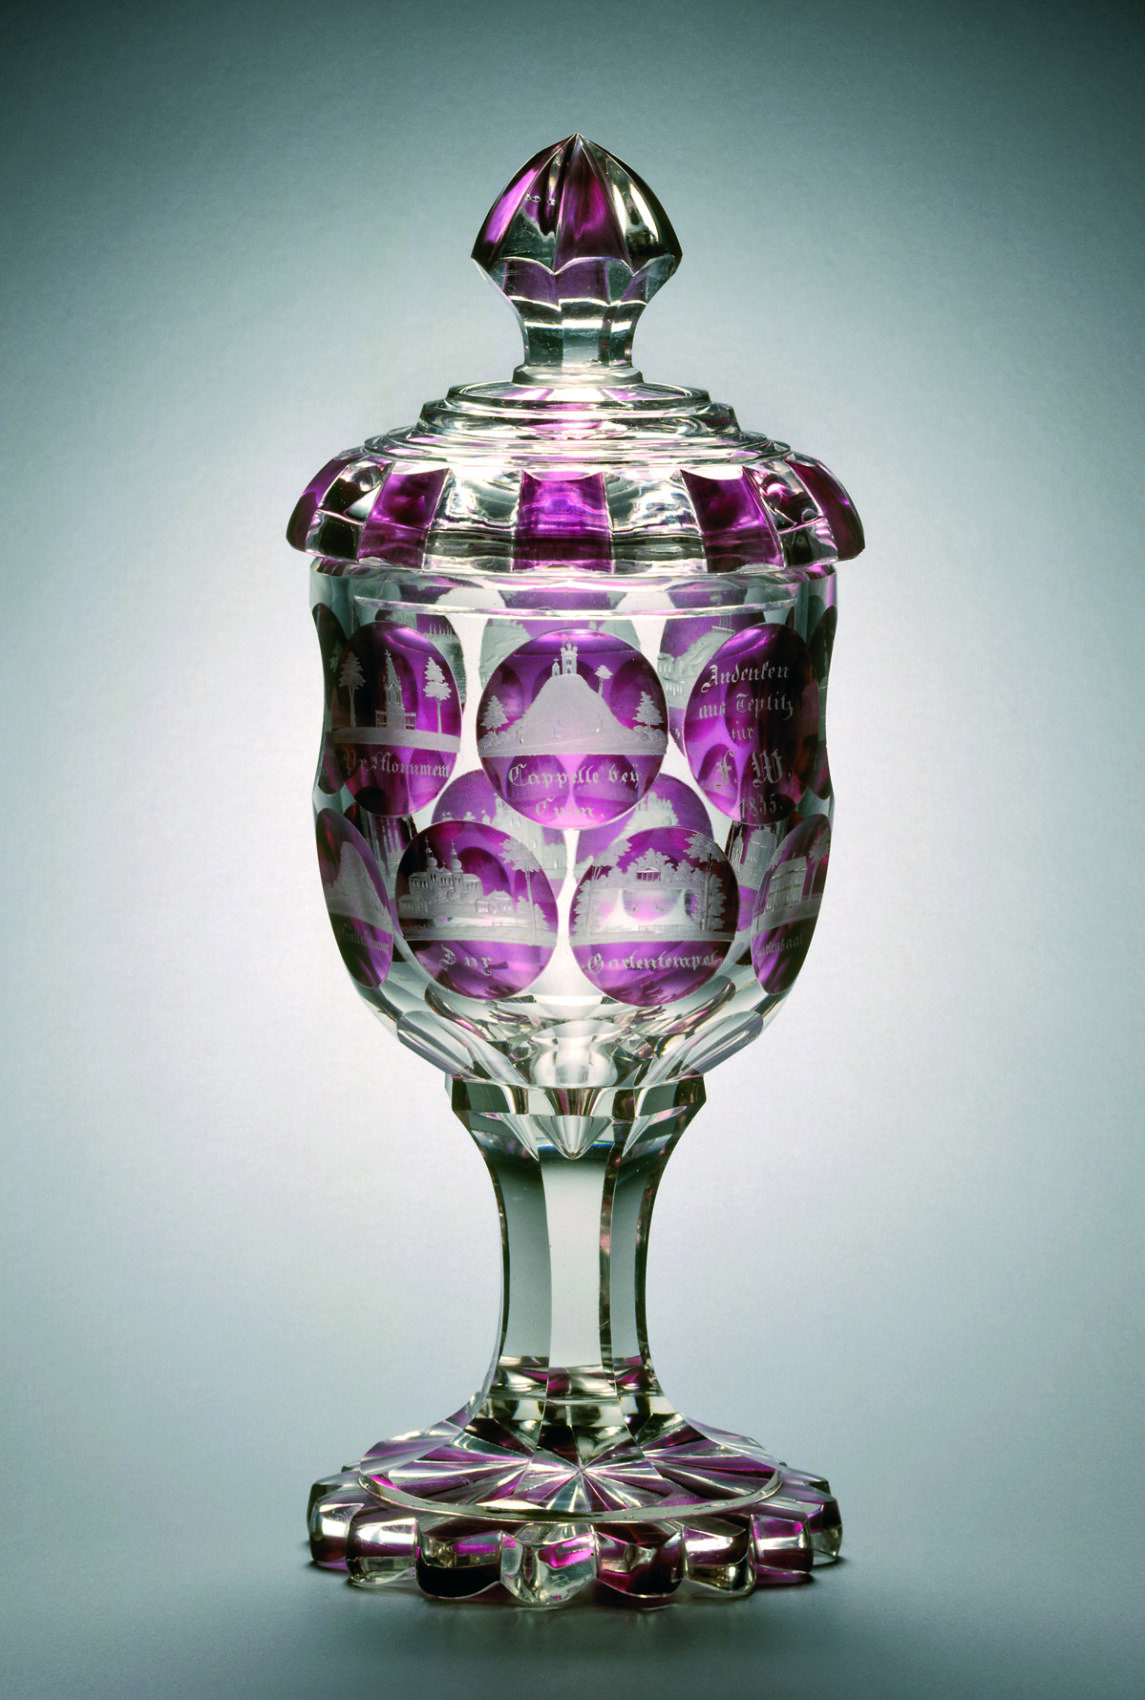 Průhledný pohár na nožce s víkem s fialovým dekorem